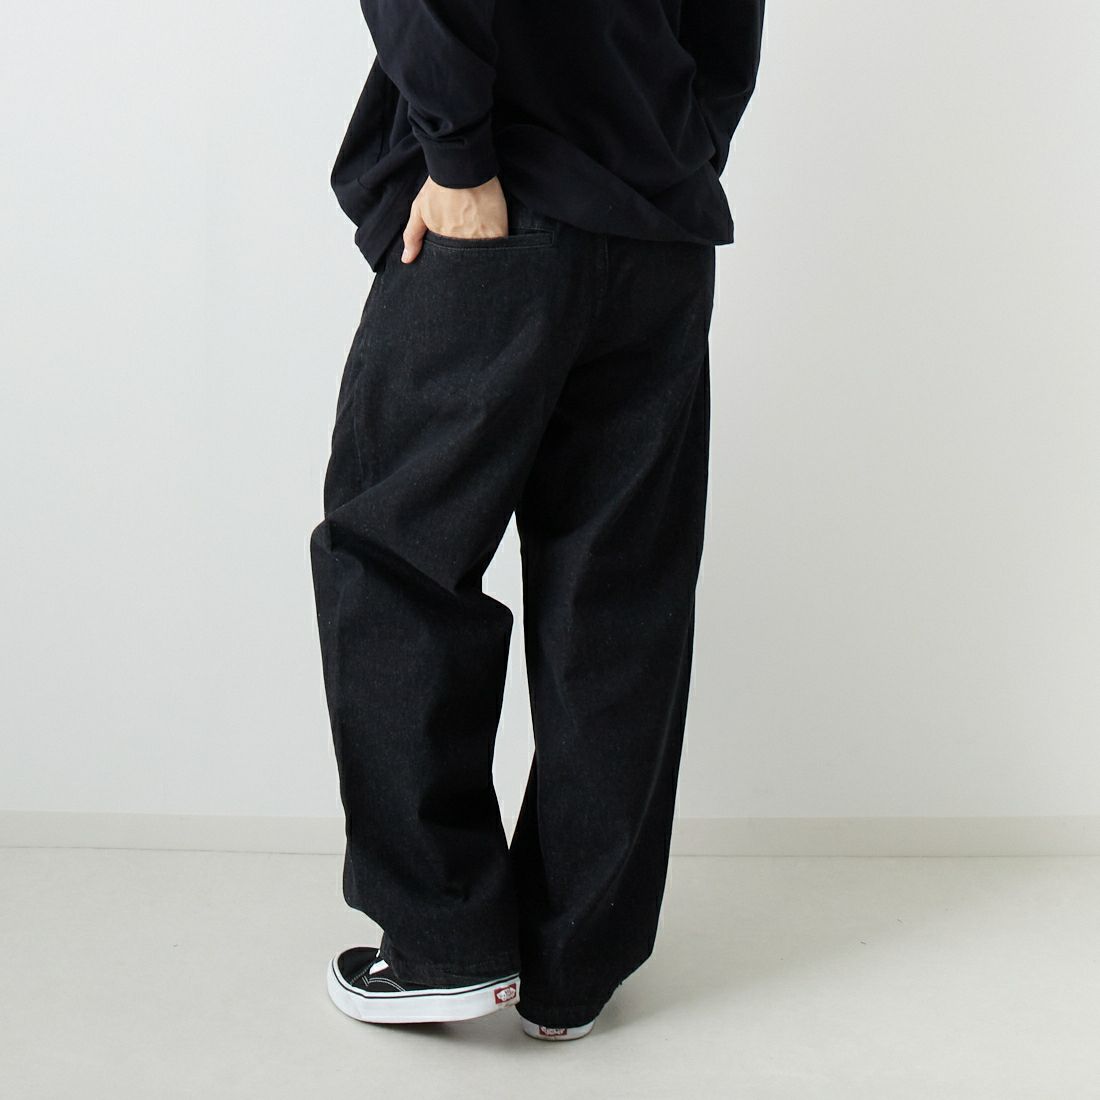 Jeans Factory Clothes [ジーンズファクトリークローズ] 2タックデニムワイドパンツ [JFC-224-052] BLACK USED &&モデル身長：169cm 着用サイズ：S&&